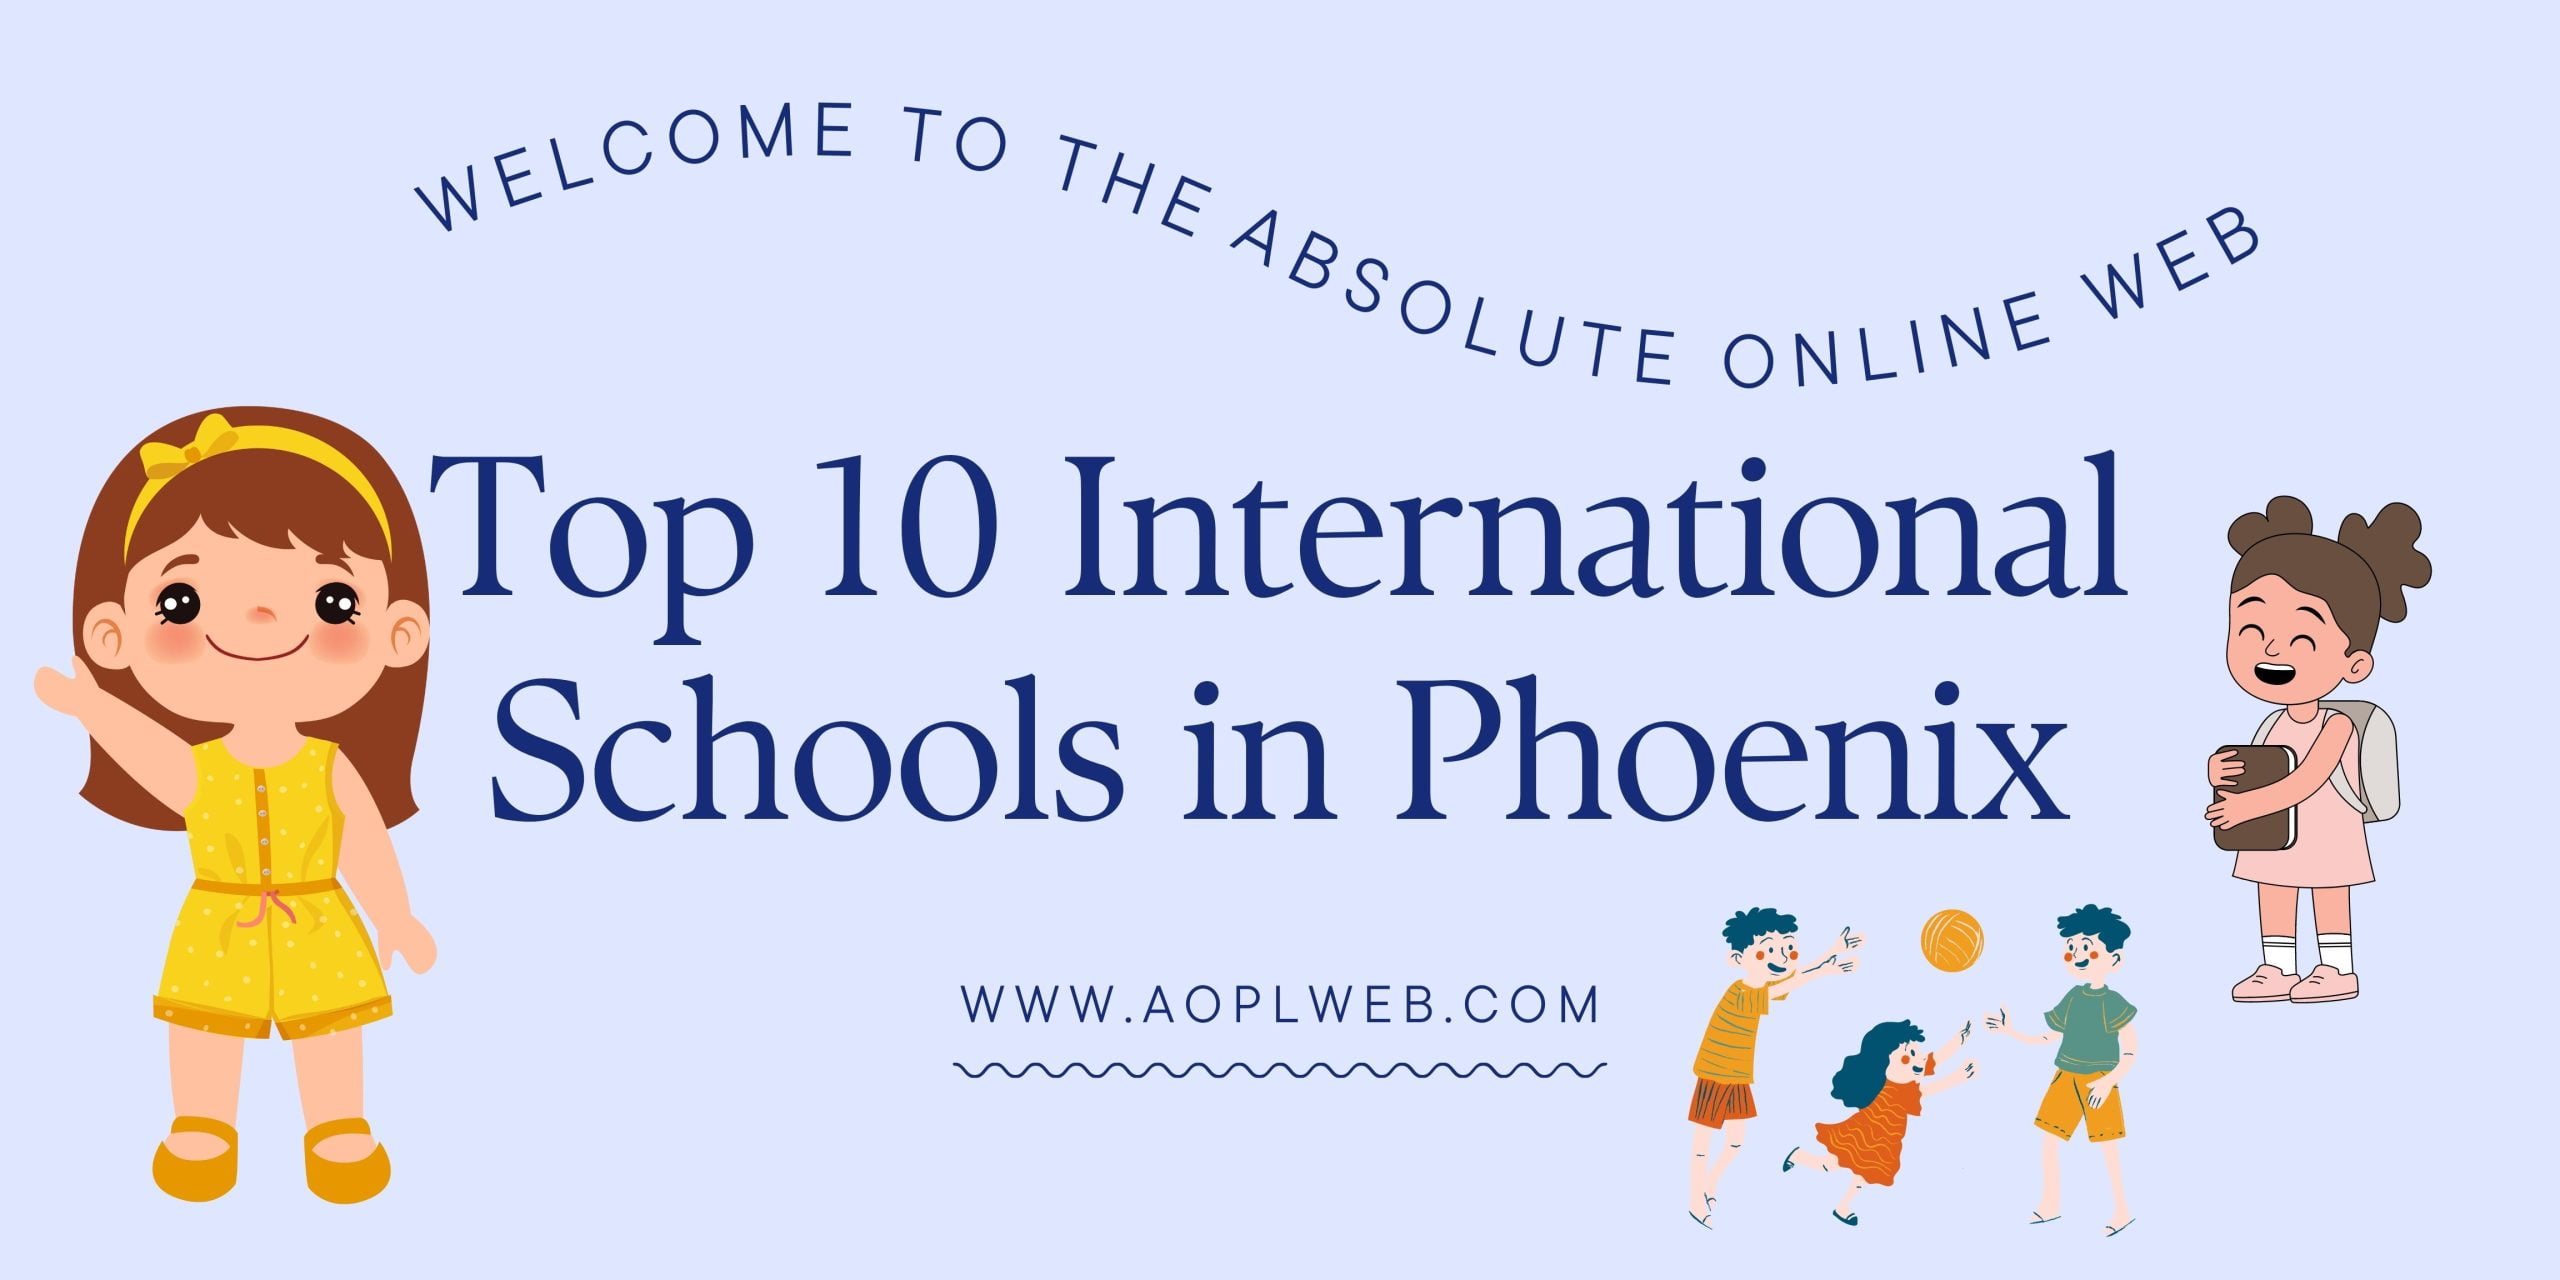 Top 10 International Schools in Phoenix